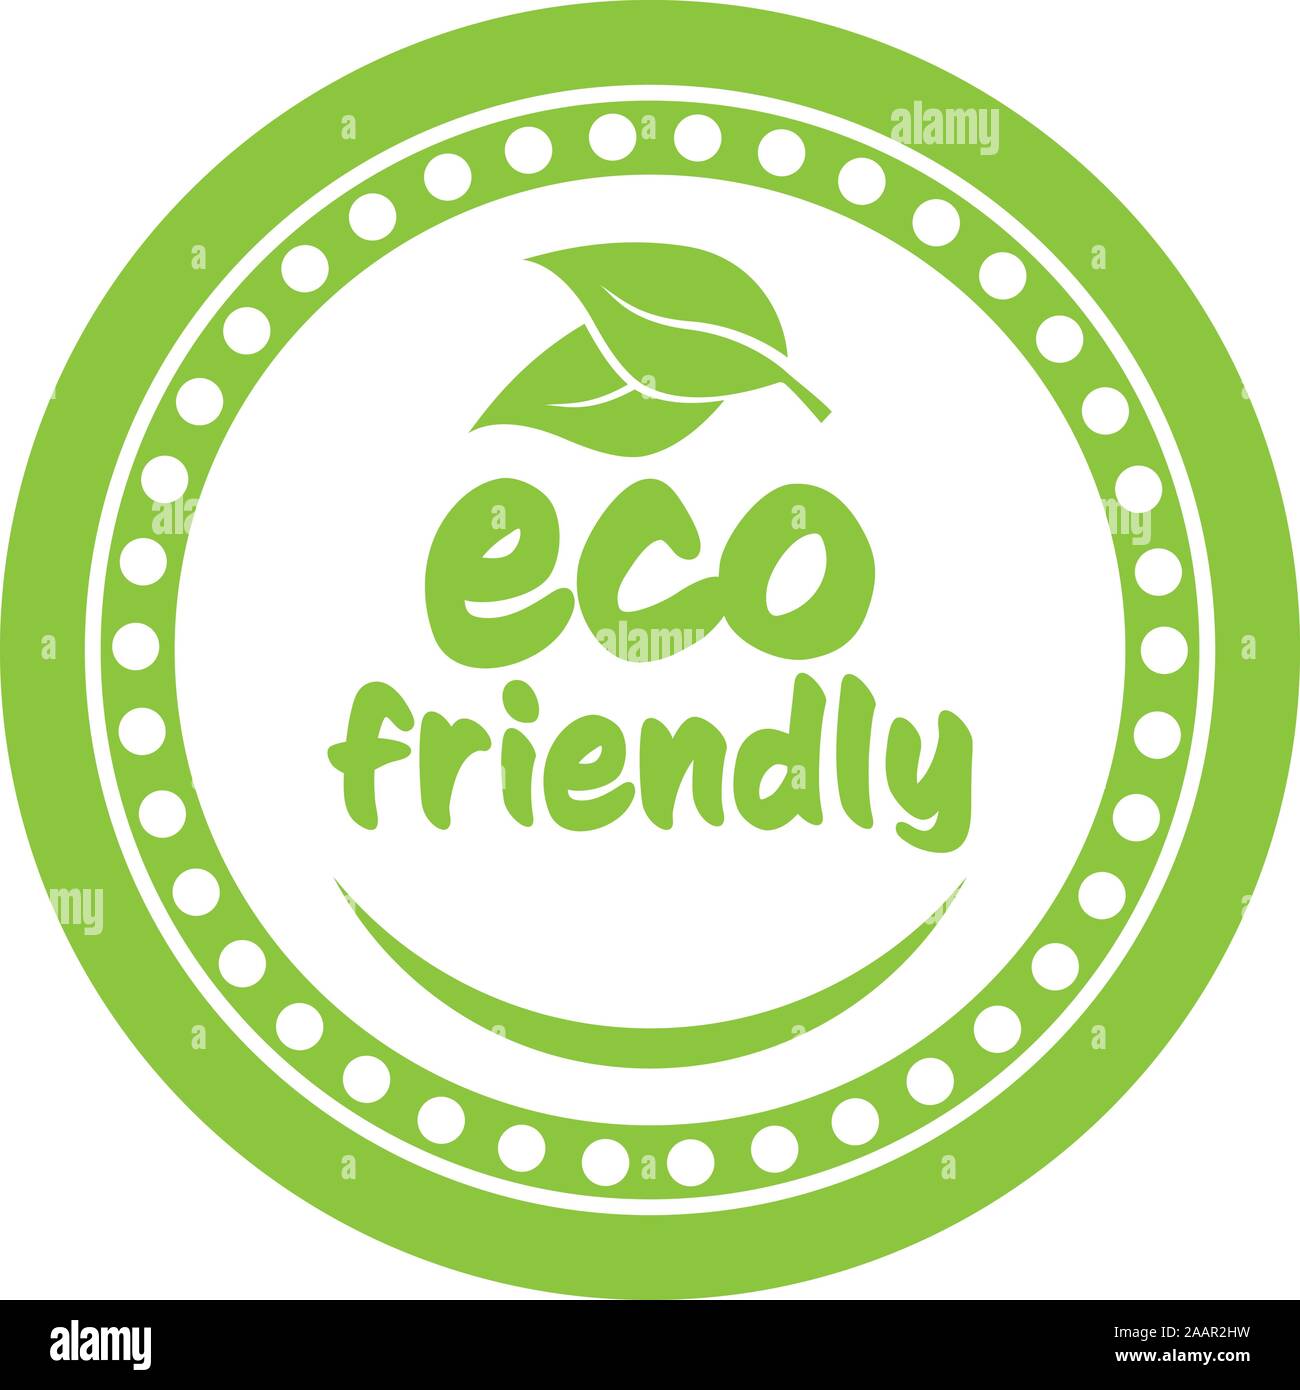 Rond vert ECO FRIENDLY stamp ou l'étiquette avec des feuilles et de l'abrégé sourire vector illustration Illustration de Vecteur